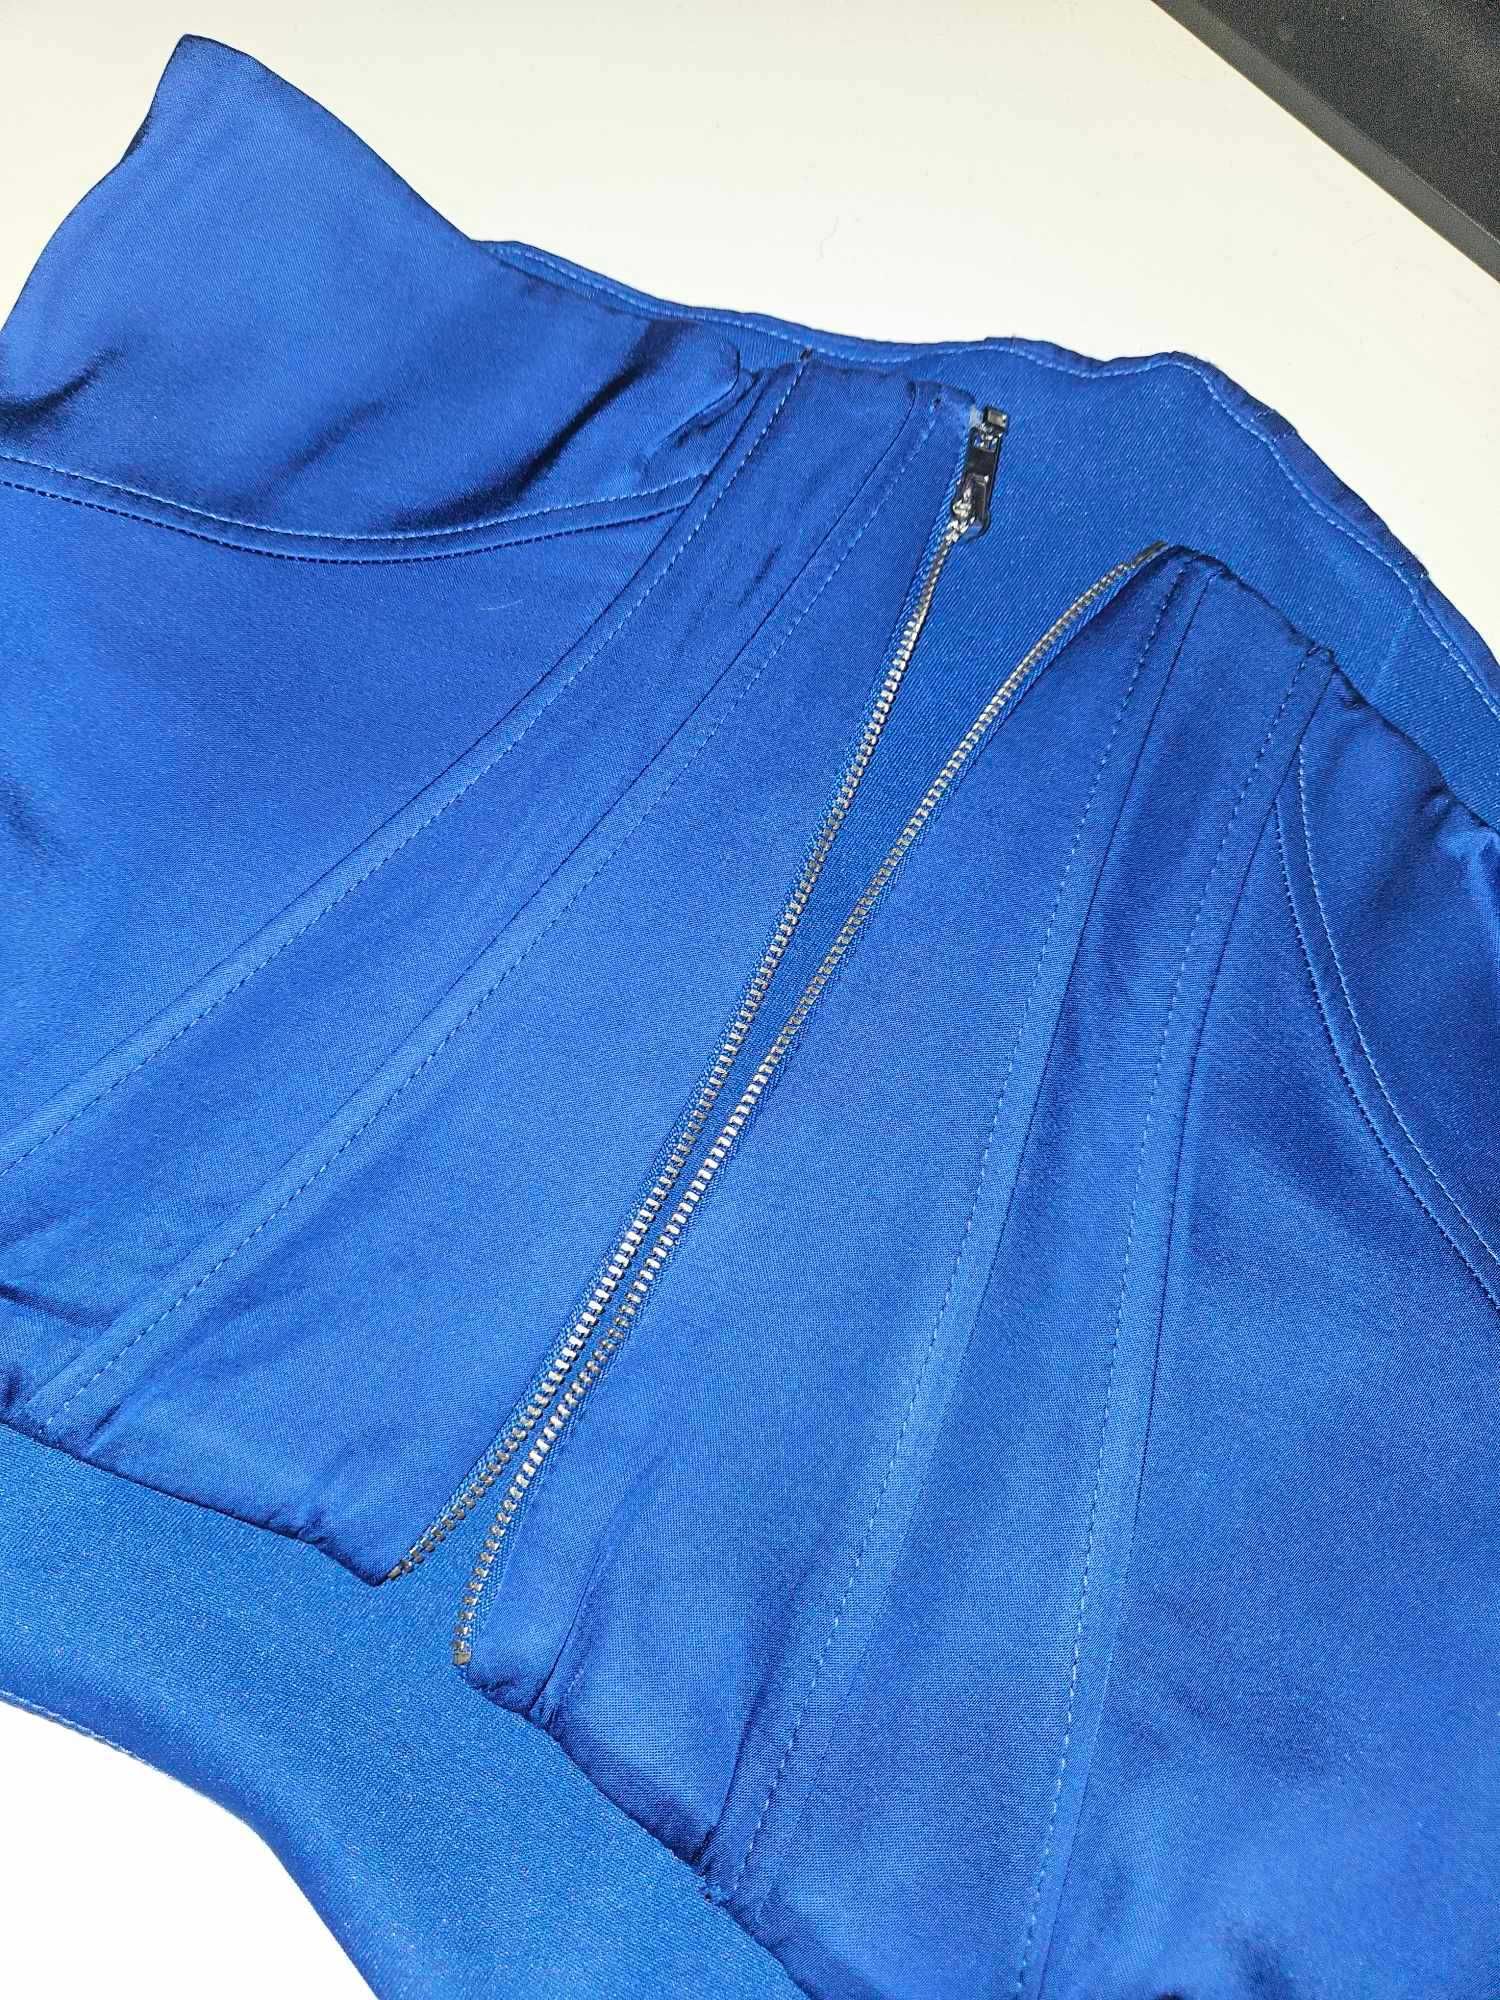 Corset Zara albastru royal